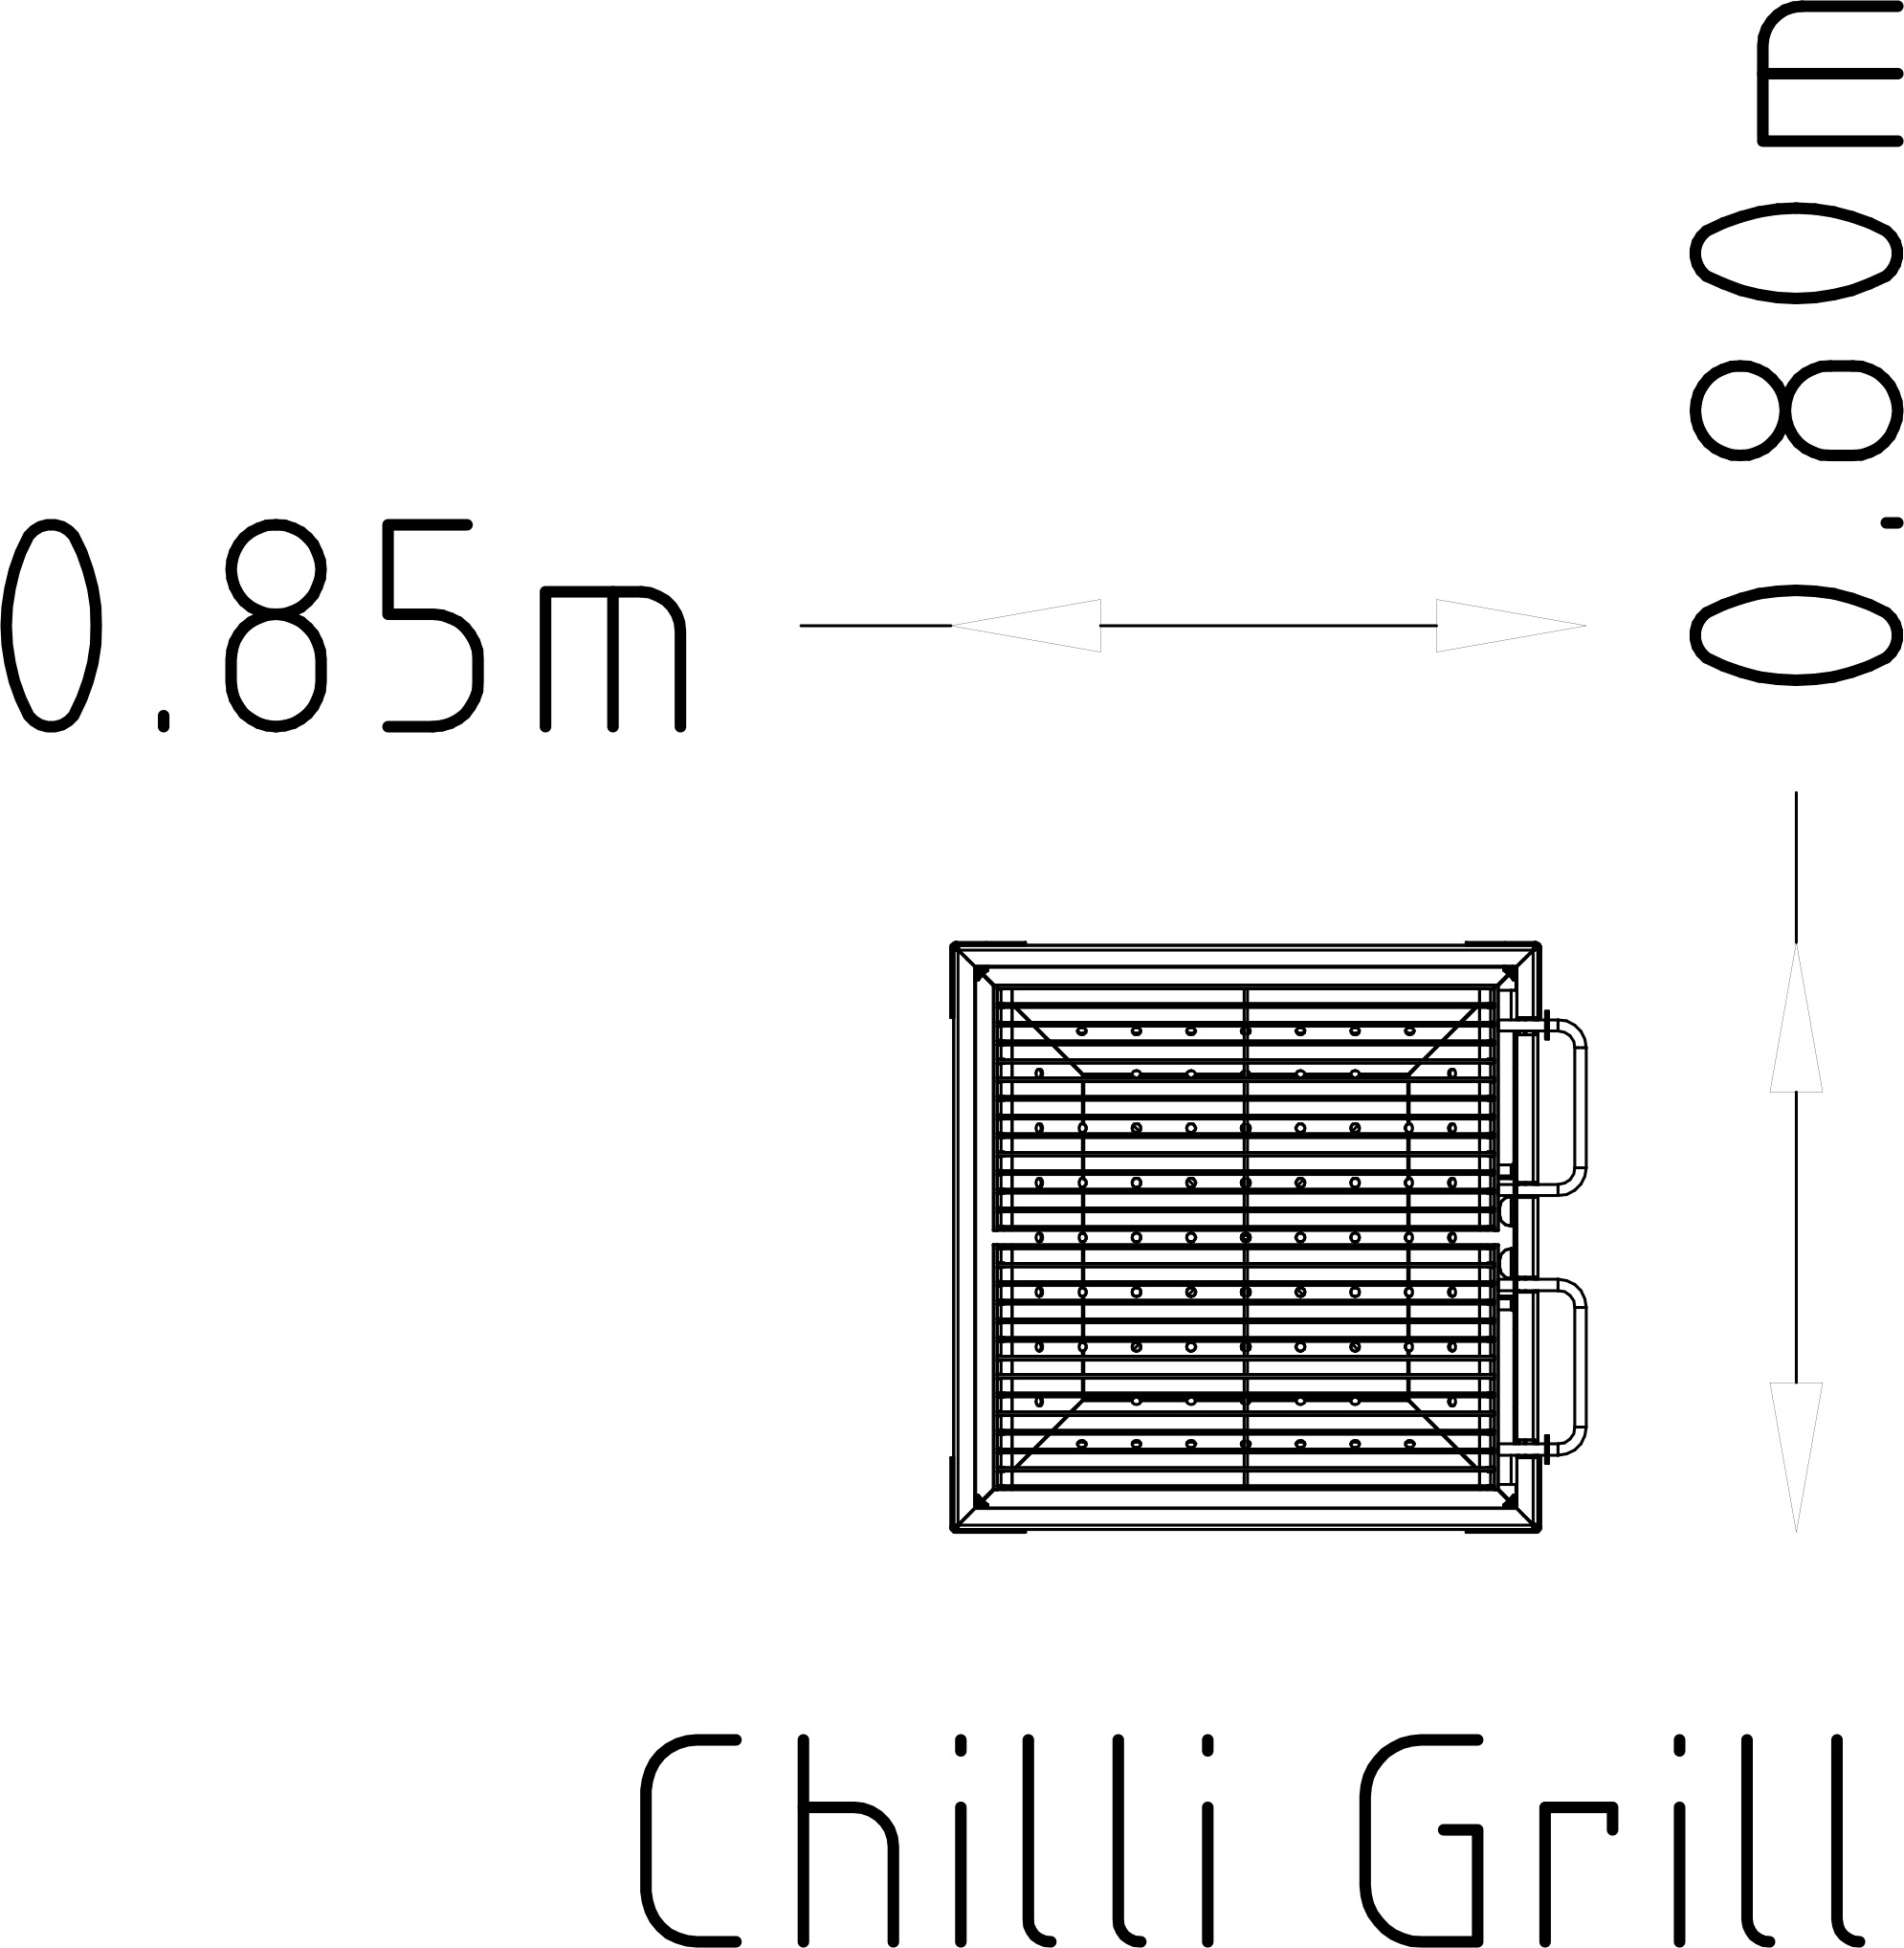 Grill Chili